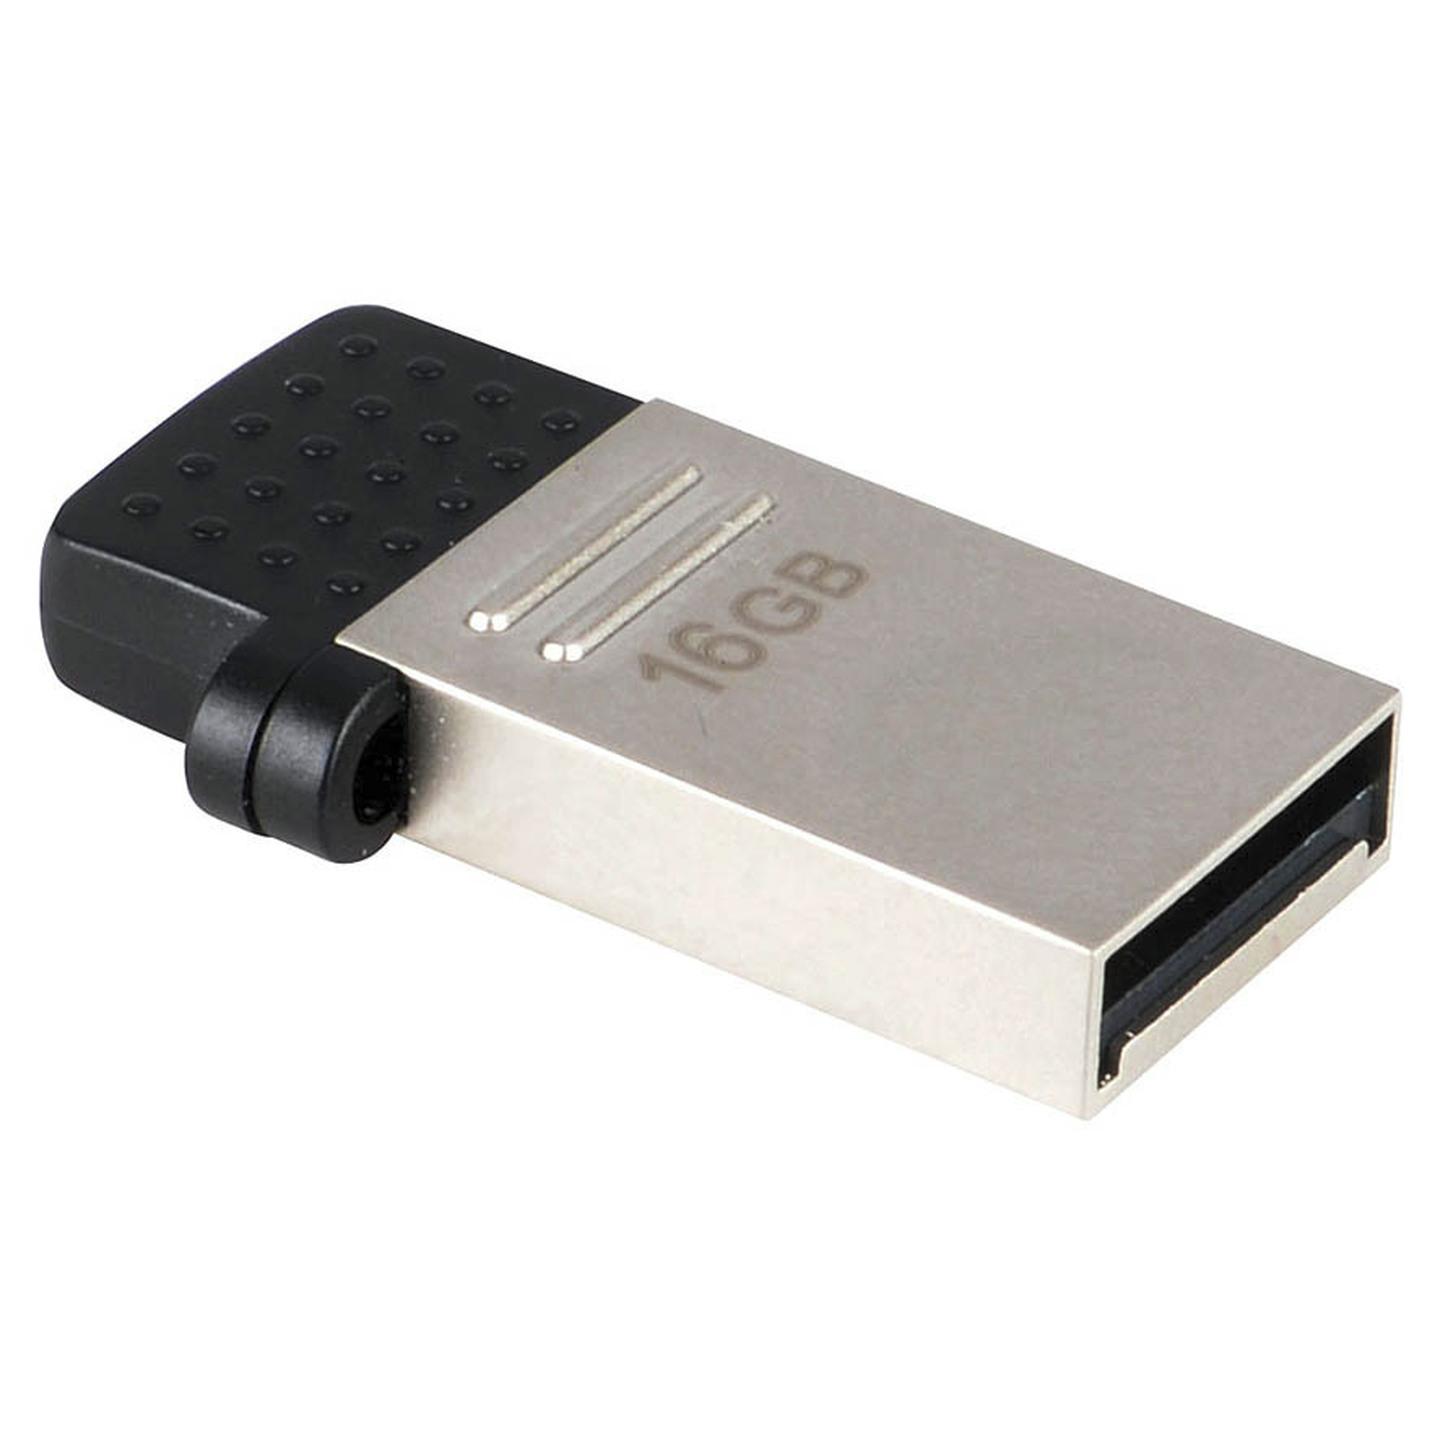 16GB OTG USB Flash Drive